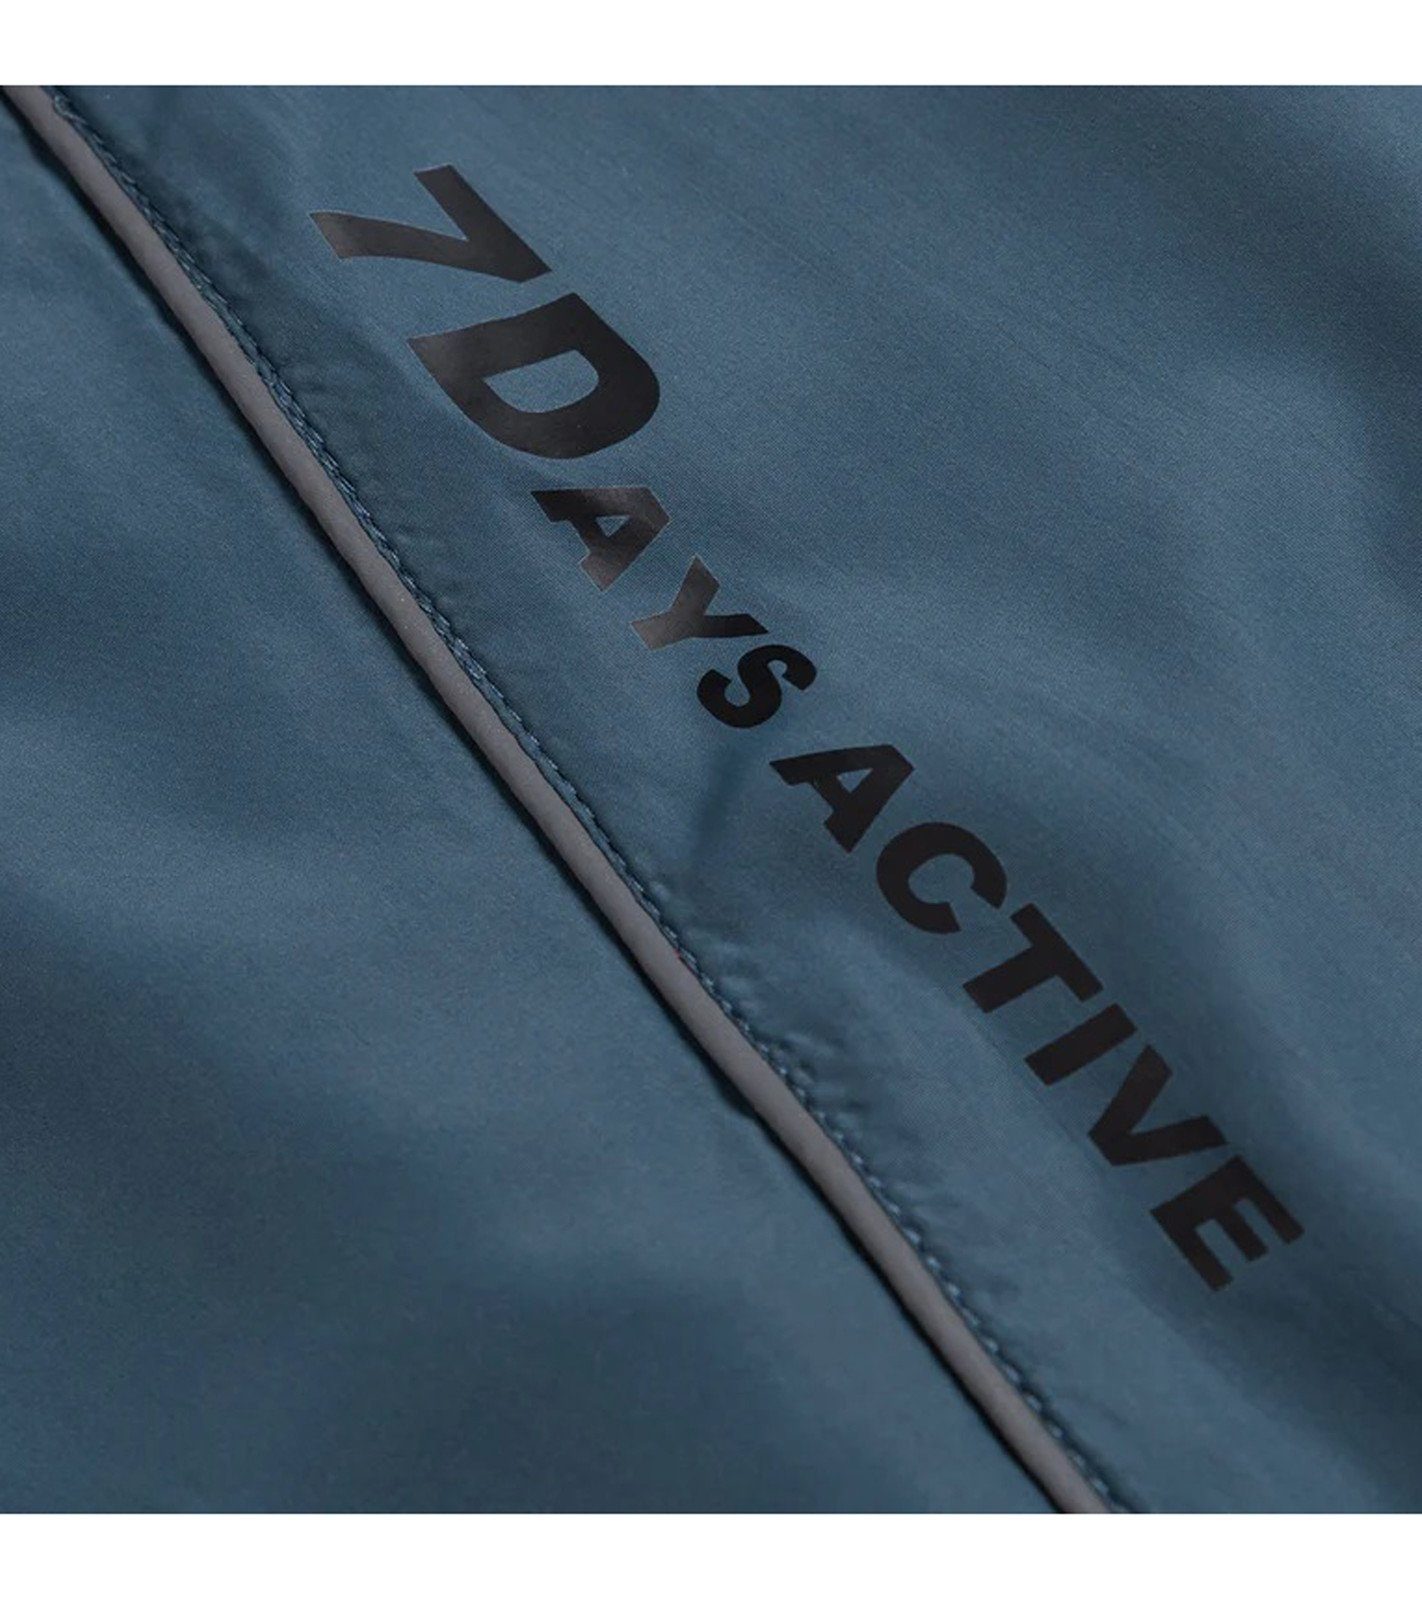 Track Active 7 Details DAYS DAYS Lauf-Jacke Trainingsjacke Active reflektierenden Blau Aicot Jacket mit 7 Sport-Jacke